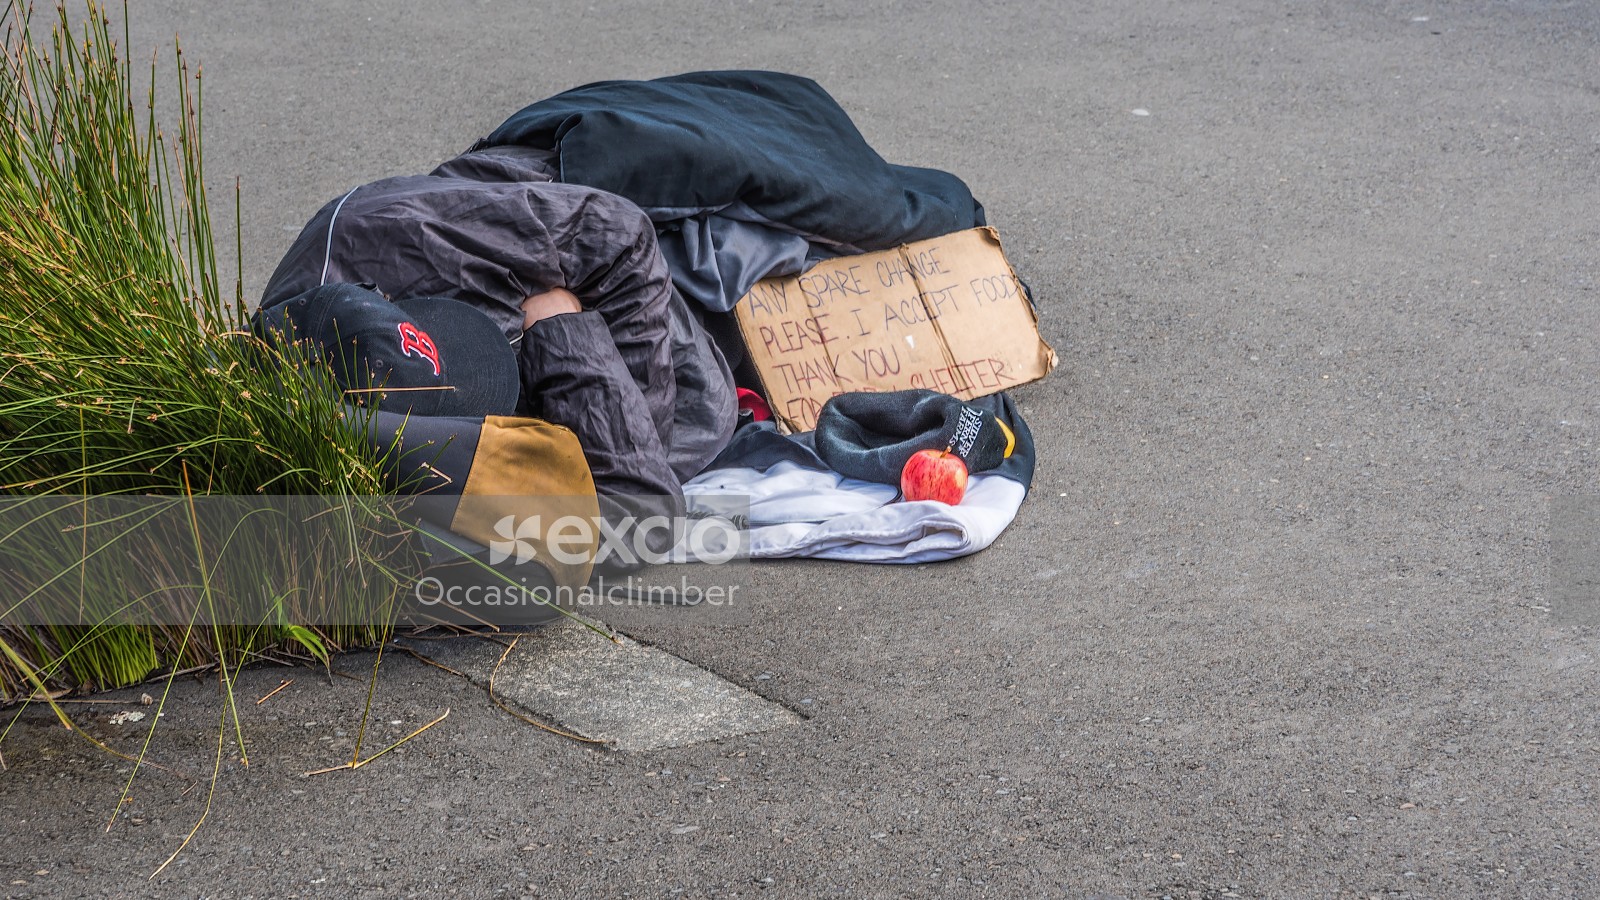 Homeless